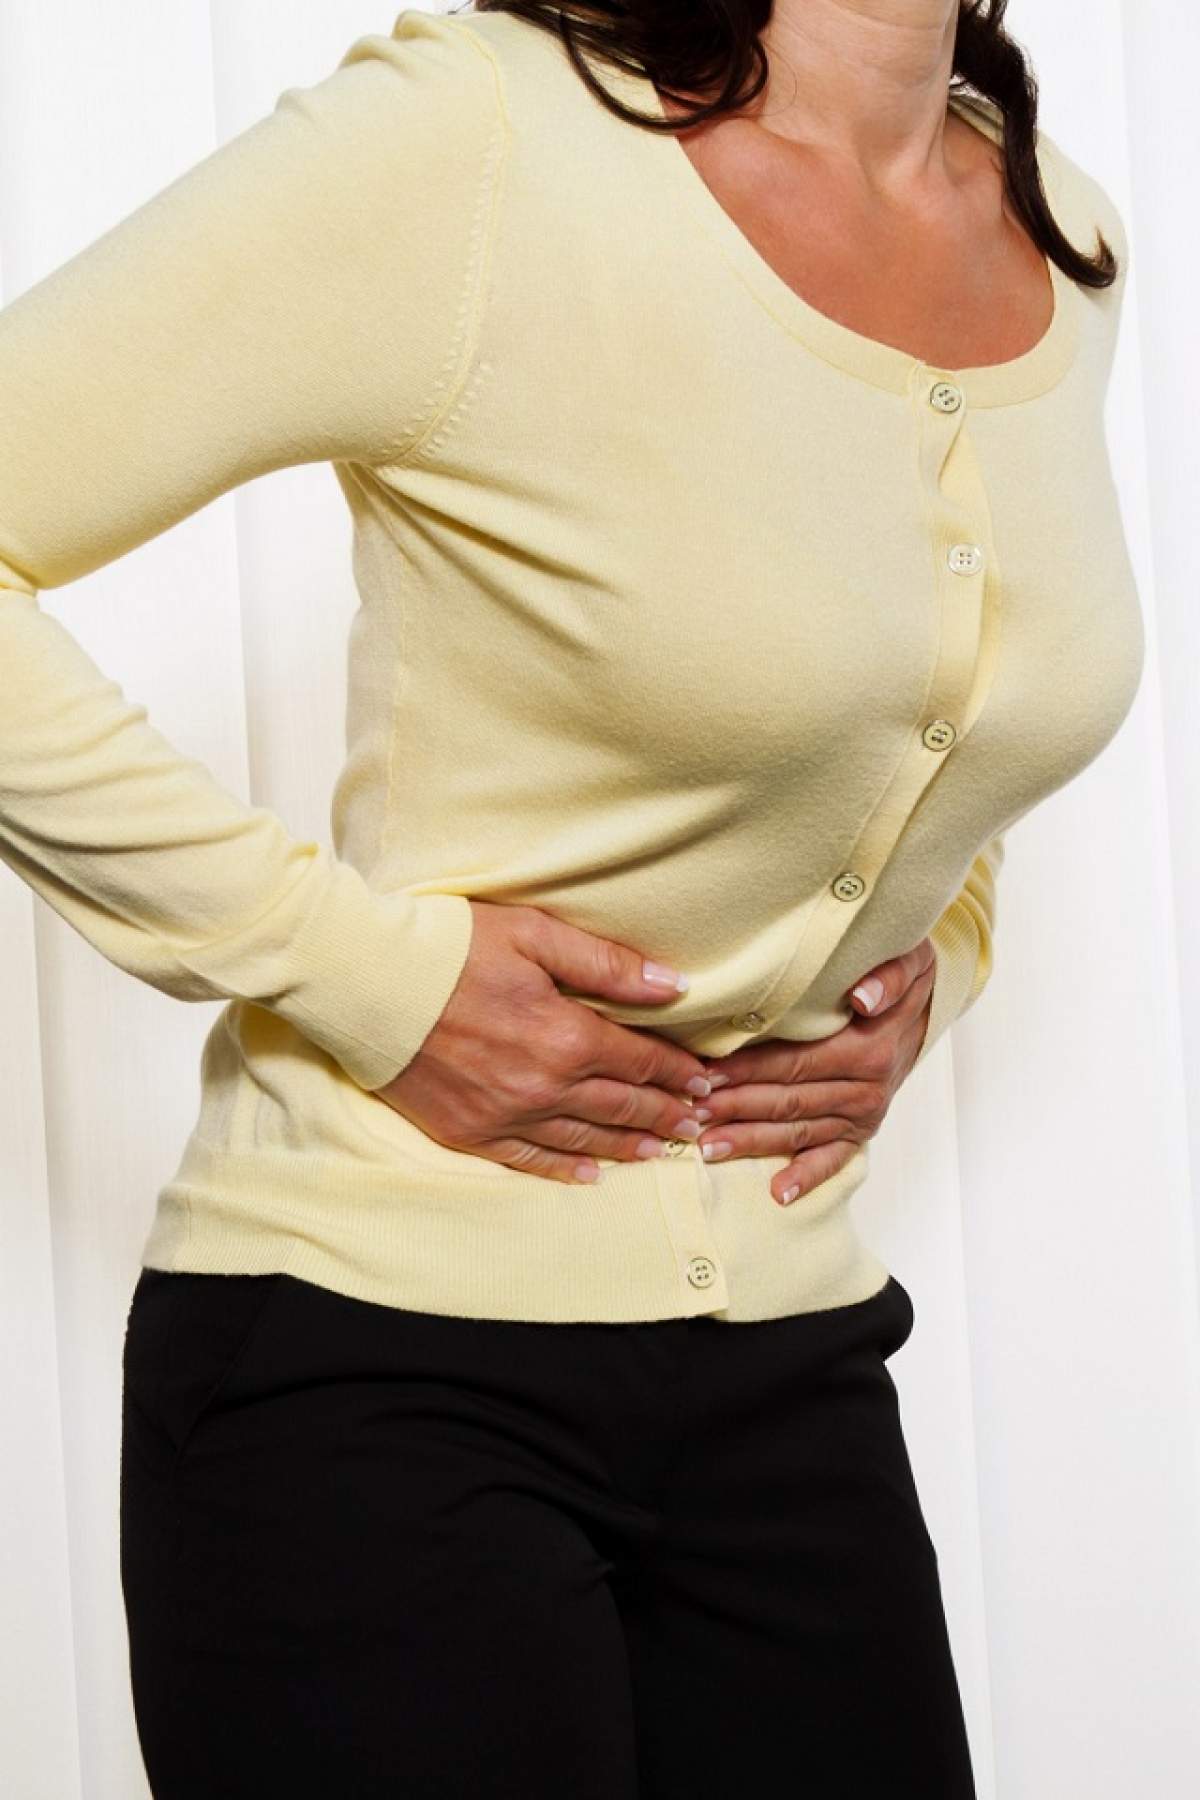 VIDEO / Durerile de stomac, semnalul de alarmă al organismului! Problemele grave care se ascund în spatele acestora